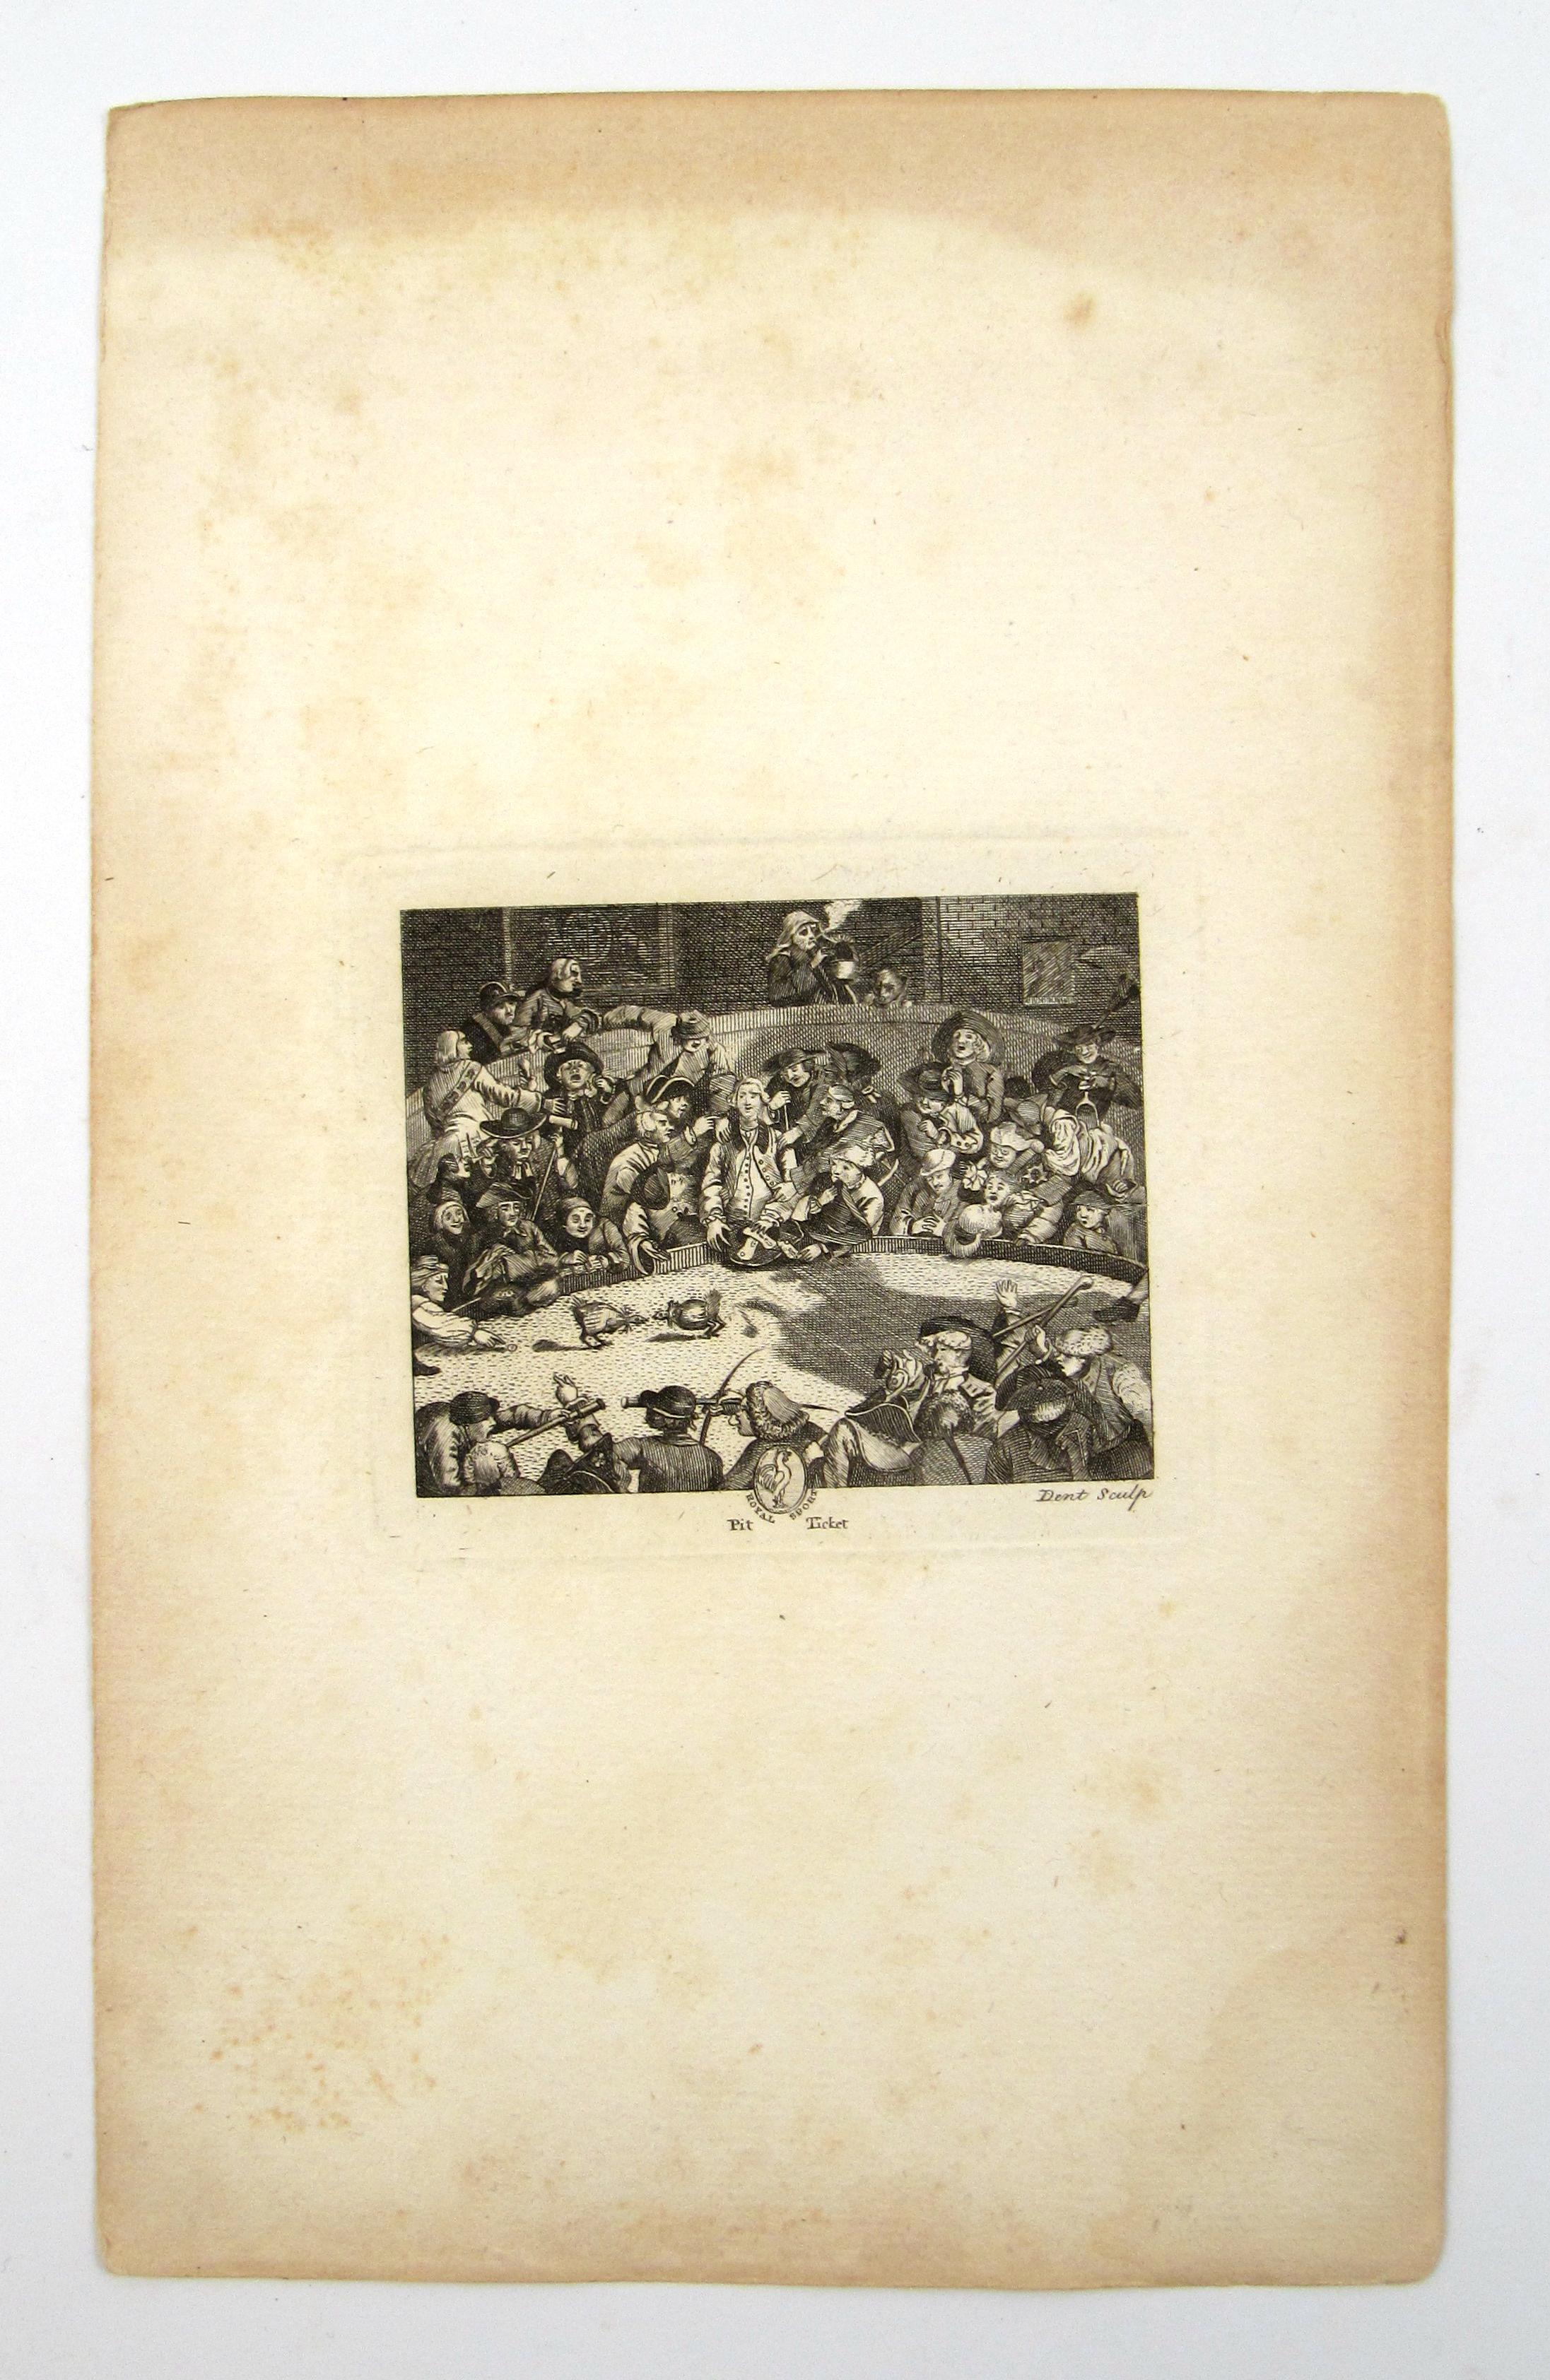 Royal Sports PIT TICKET - 18thC Eingangskarte zum Cock Fight in georgianischem England – Print von William Hogarth